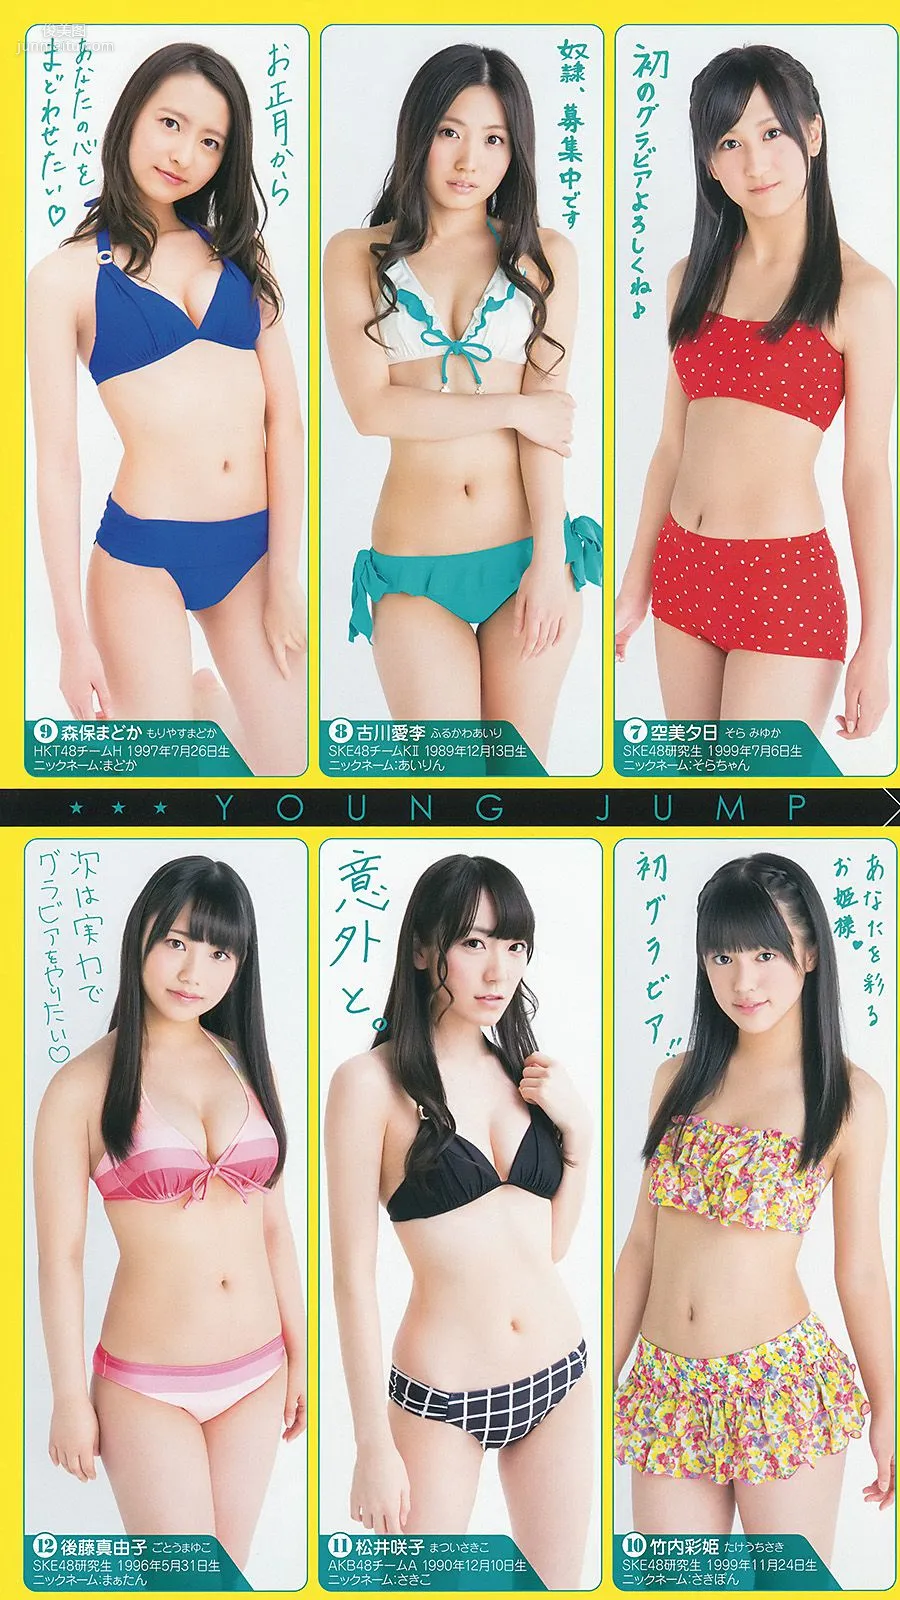 新川優愛 48グループ 木下ひなこ [Weekly Young Jump] 2014年No.06-07写真杂志14